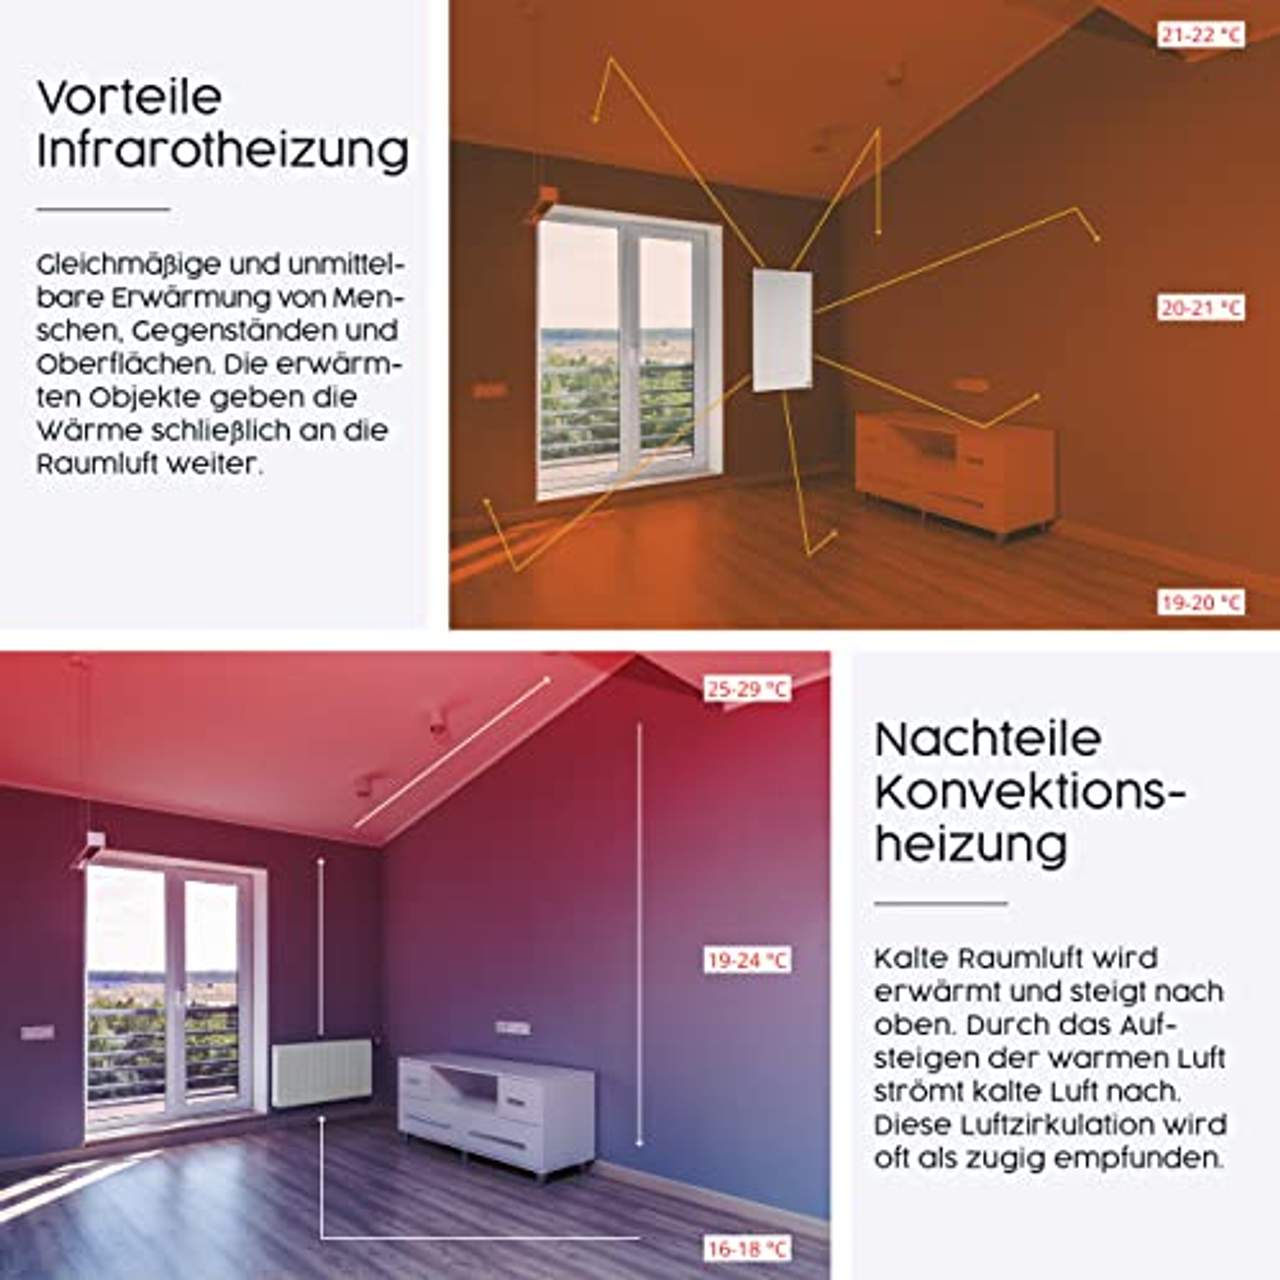 Könighaus Fern Infrarotheizung Bildheizung in HD Qualität 450W